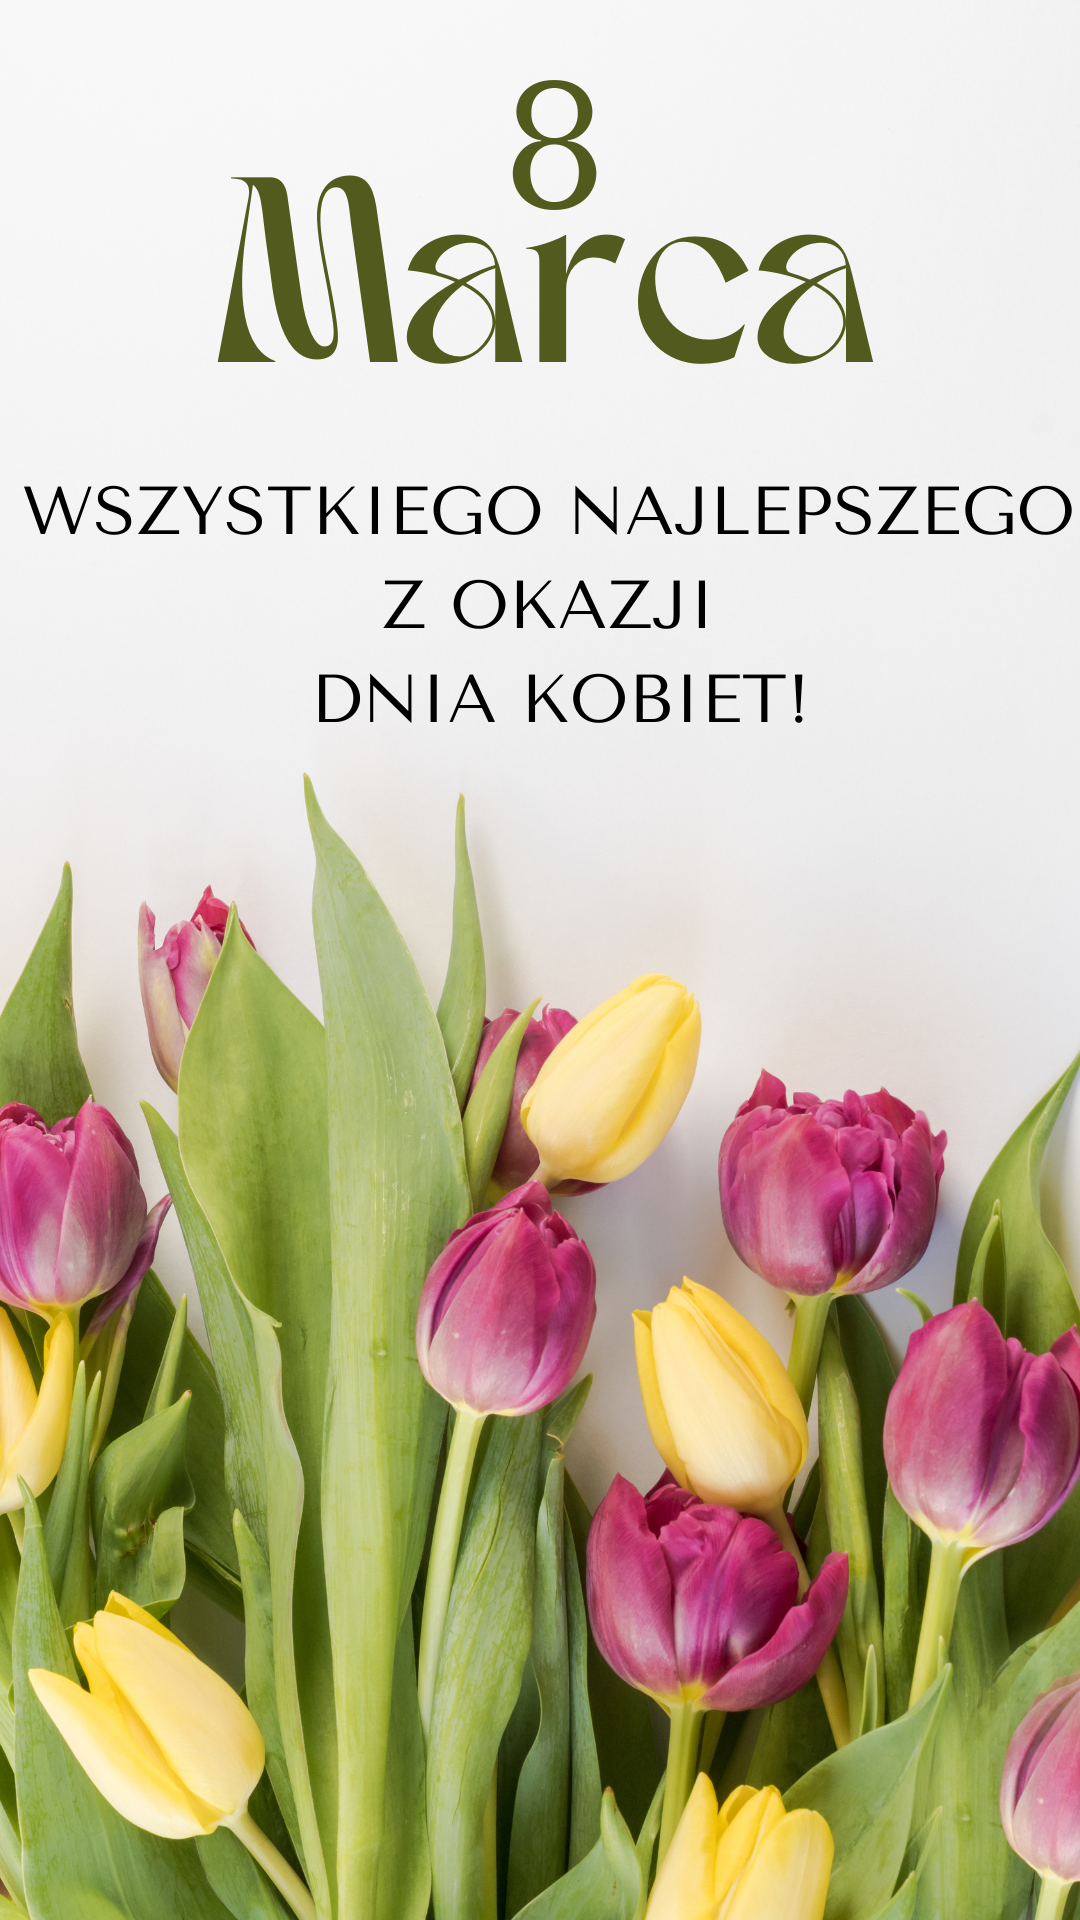 Bukiet tulipanów z życzeniami na Dzień Kobiet